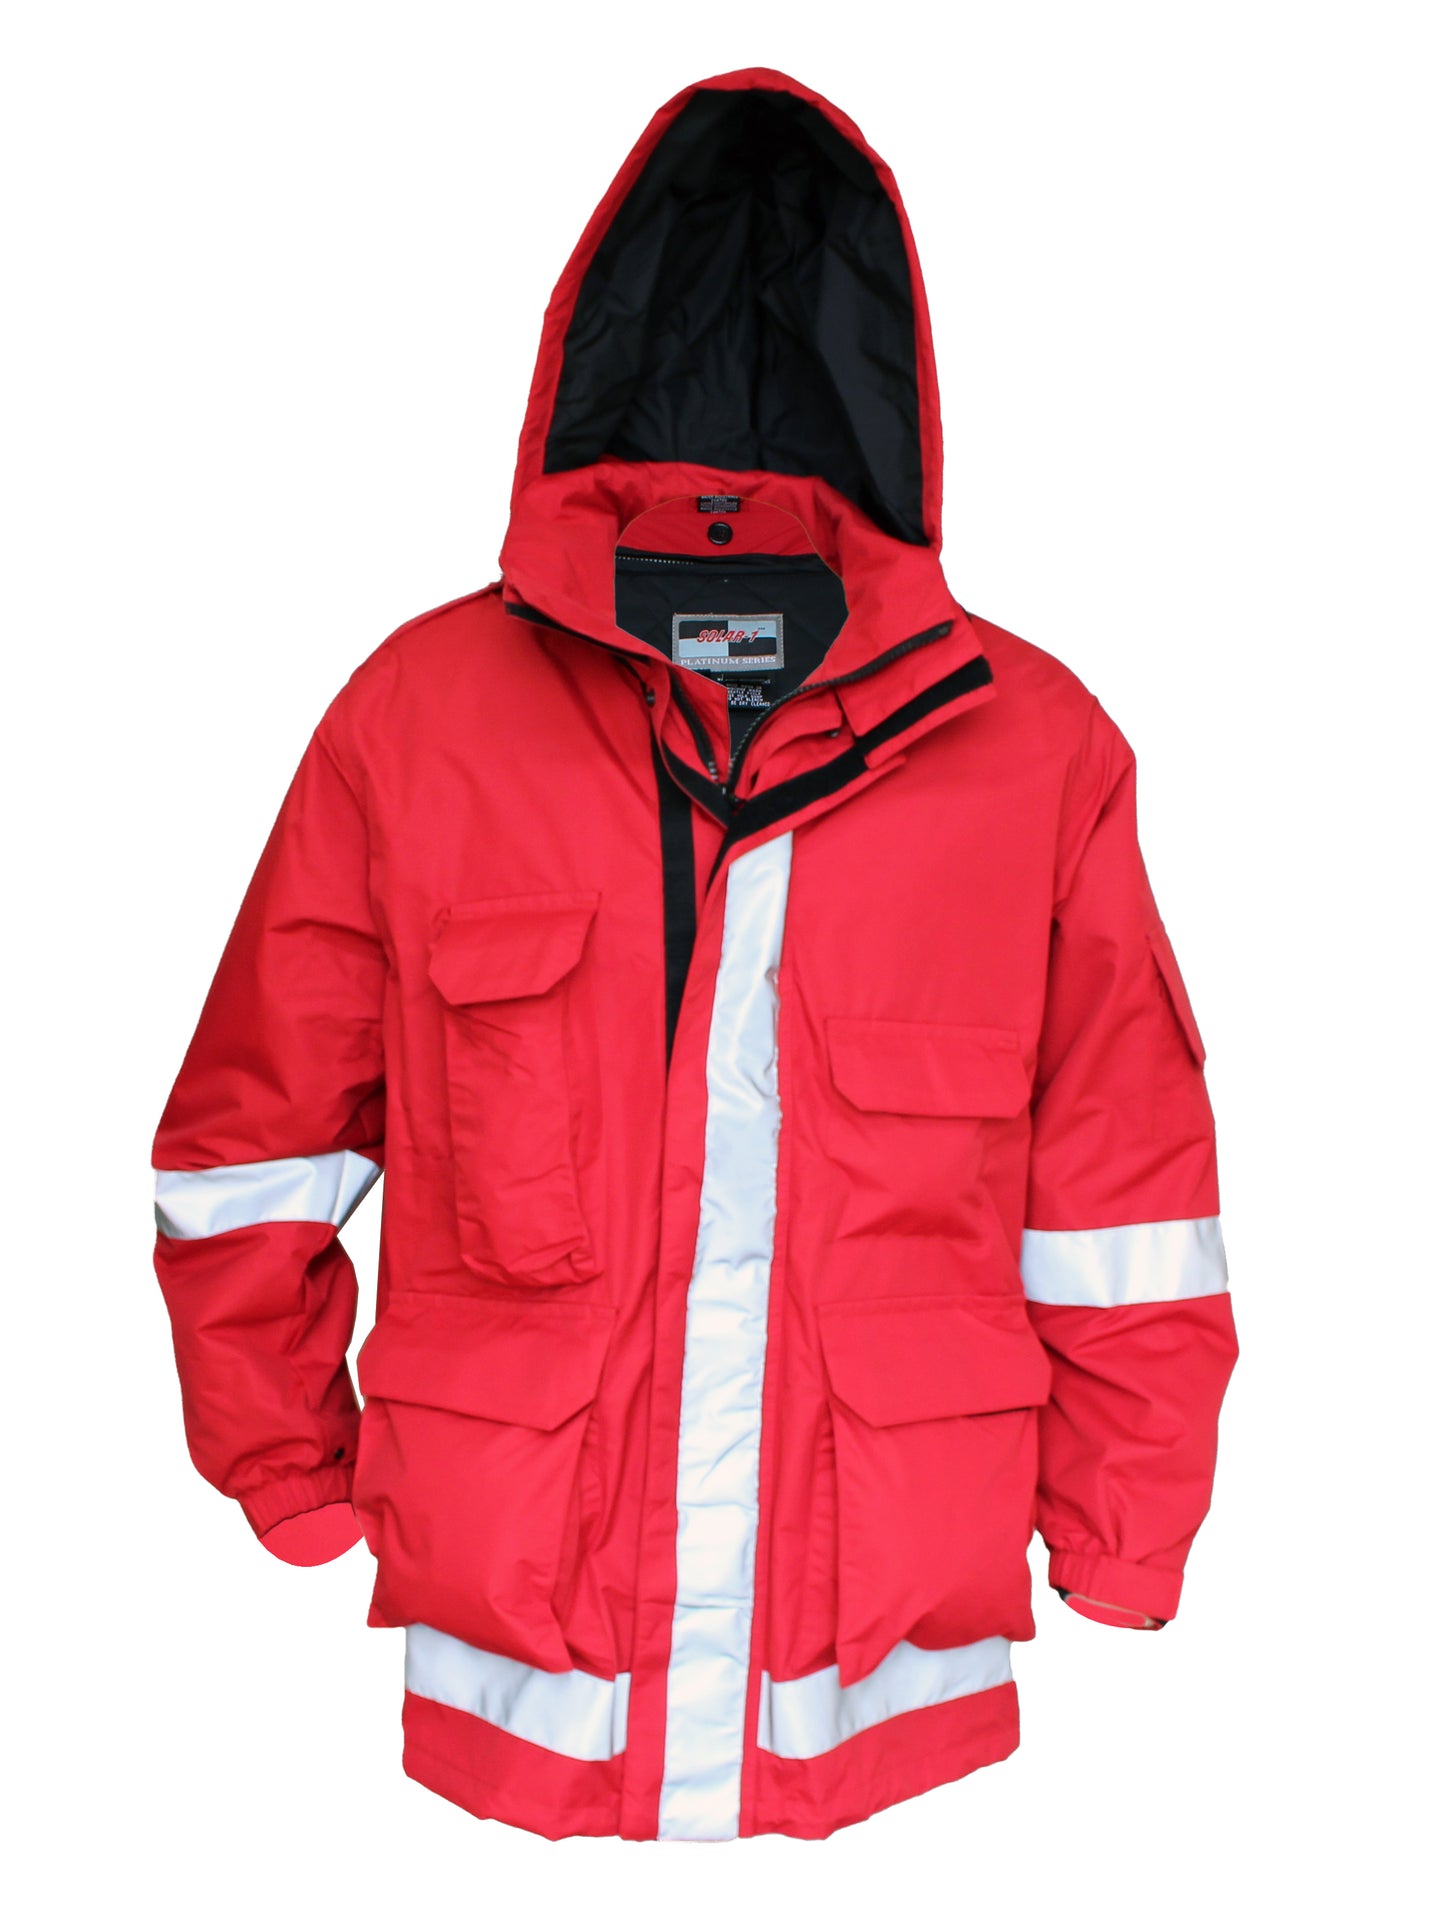 Solar 1 Clothing EMS Jacket with Bloodborne Pathogen Protection EM01